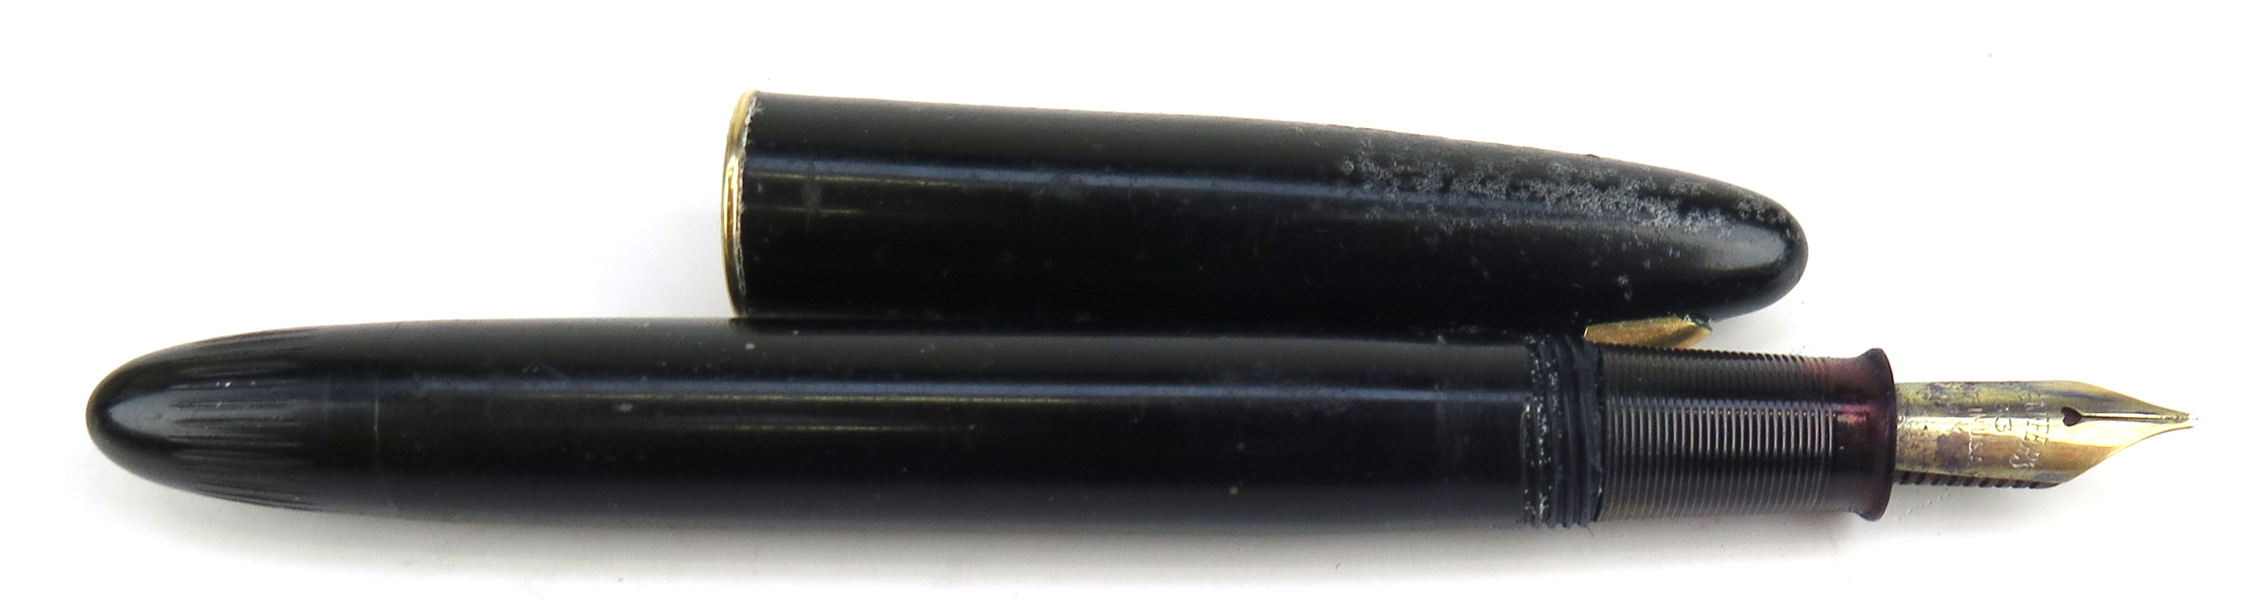 Reservoirpenna, Sheaffer, 1900-talets 1 hälft, 33-stift i 14 karat rödguld, _23030a_8dab0386100d64e_lg.jpeg